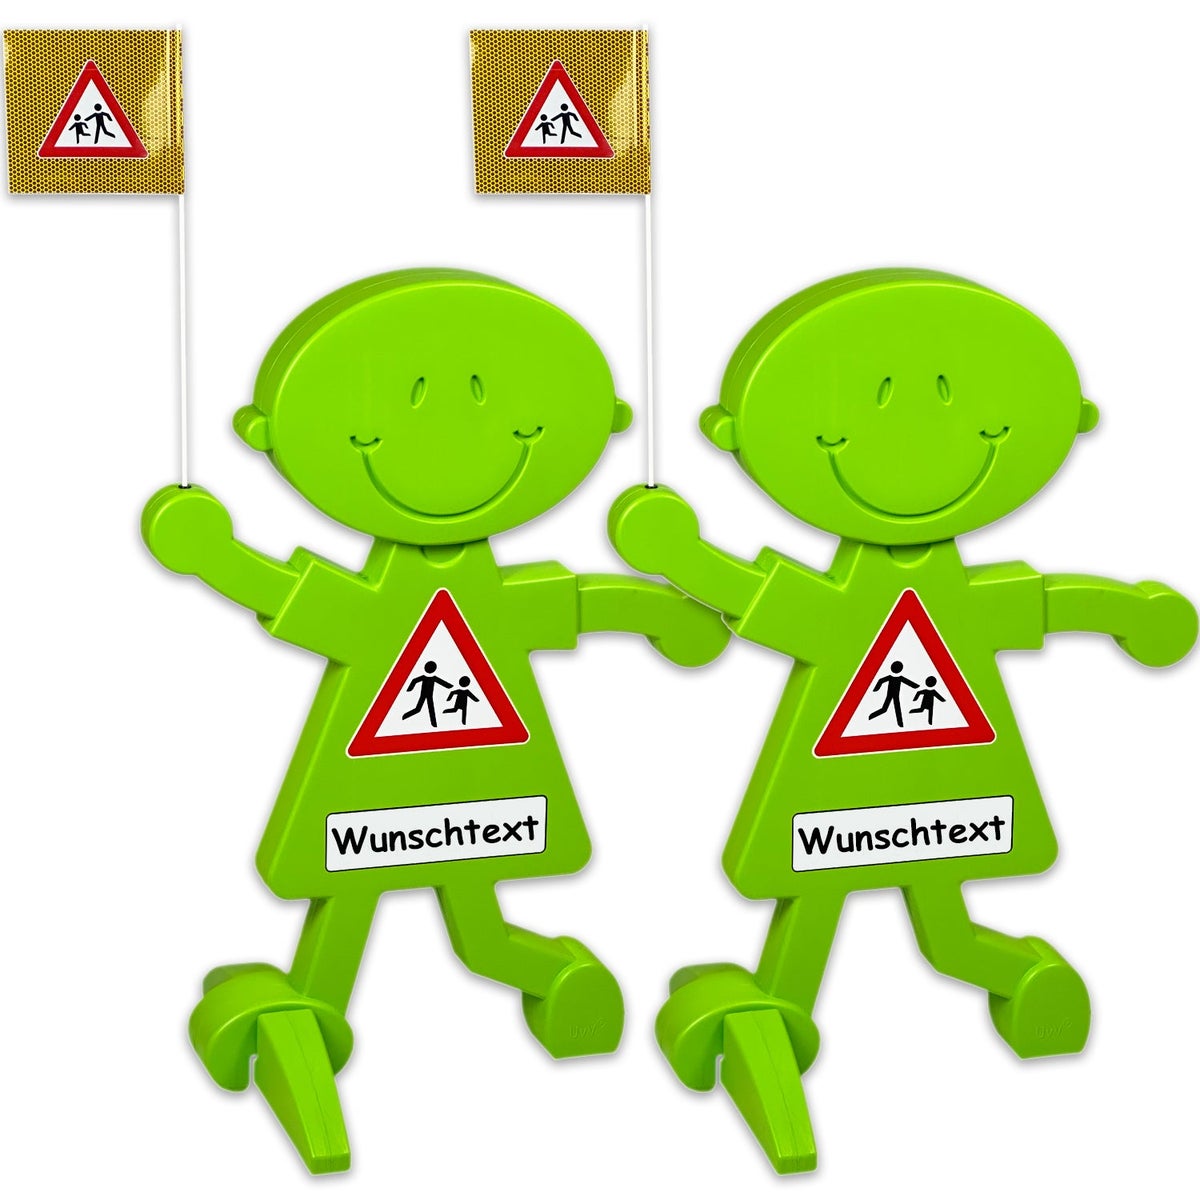 3D Warnschild Vorsicht spielende Kinder mit reflektierender Folie und Wunschtext für mehr Verkehrssicherheit / (2 Stück)